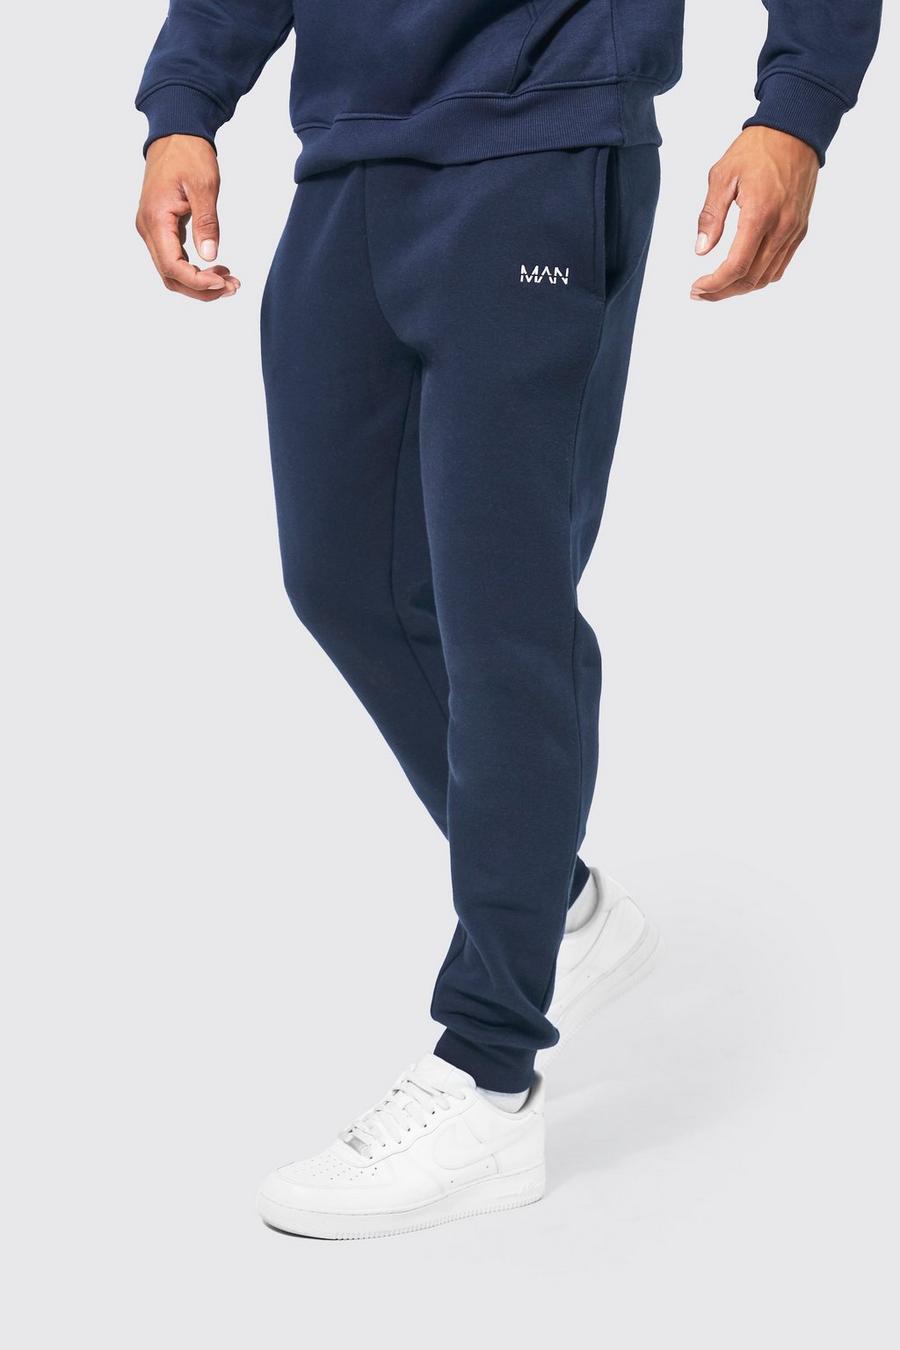 Pantalón deportivo MAN Original pitillo, Navy azul marino